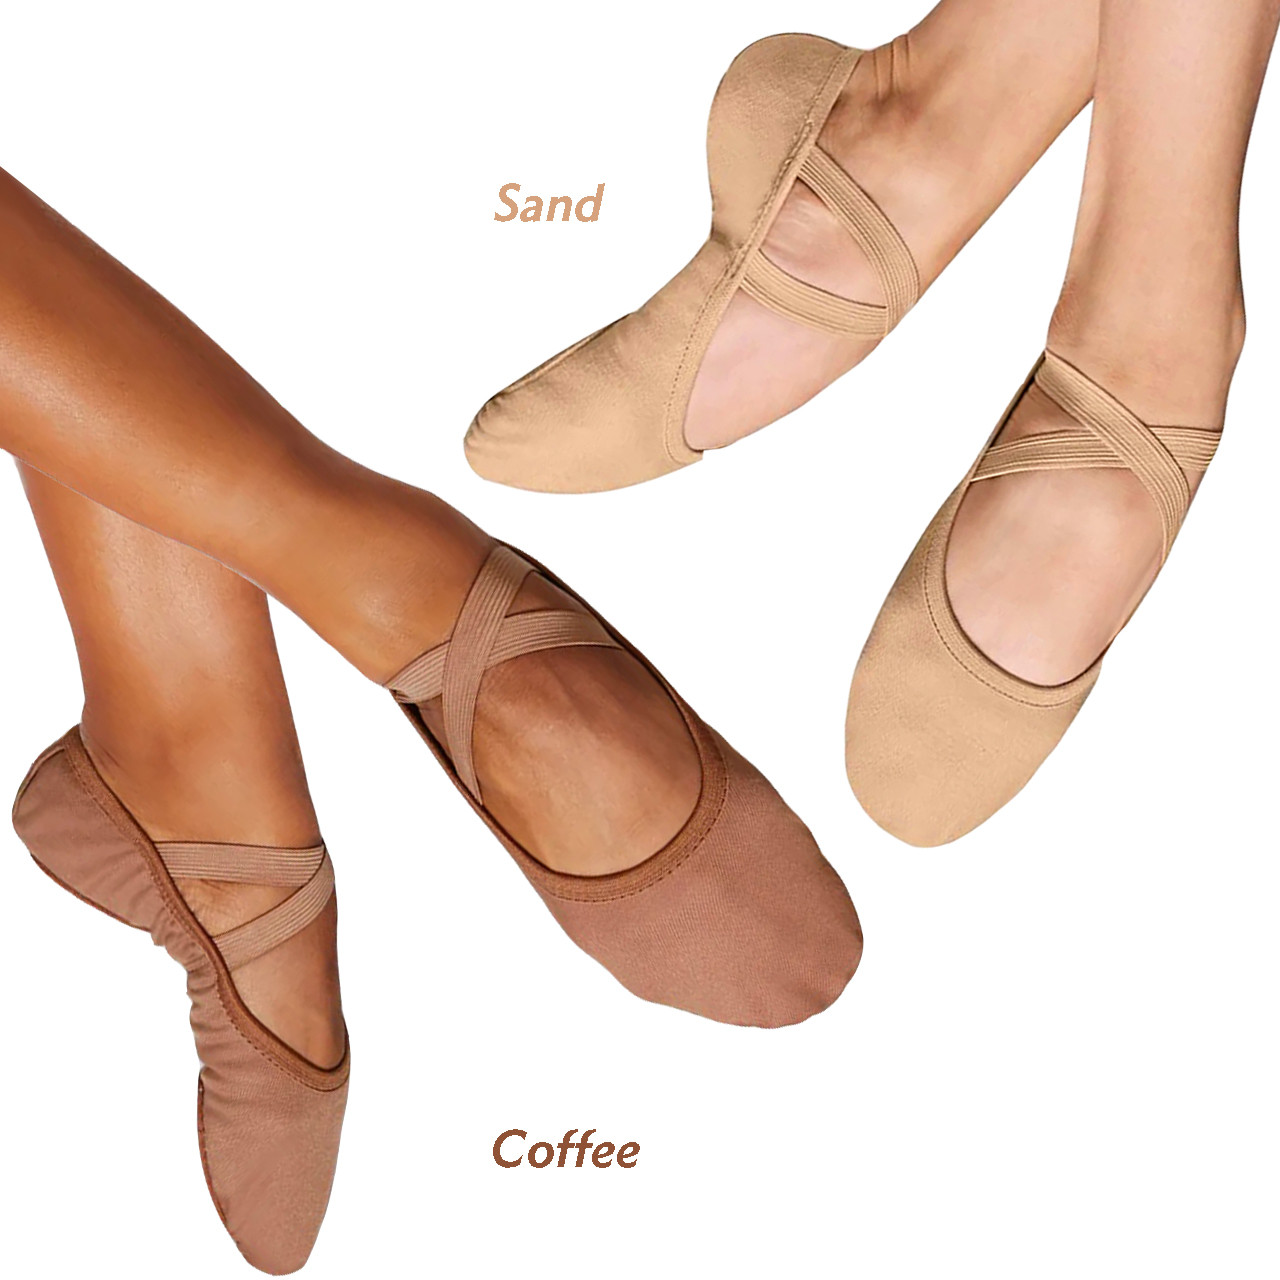 So Danca Child's Bliss Canvas Ballet Shoe